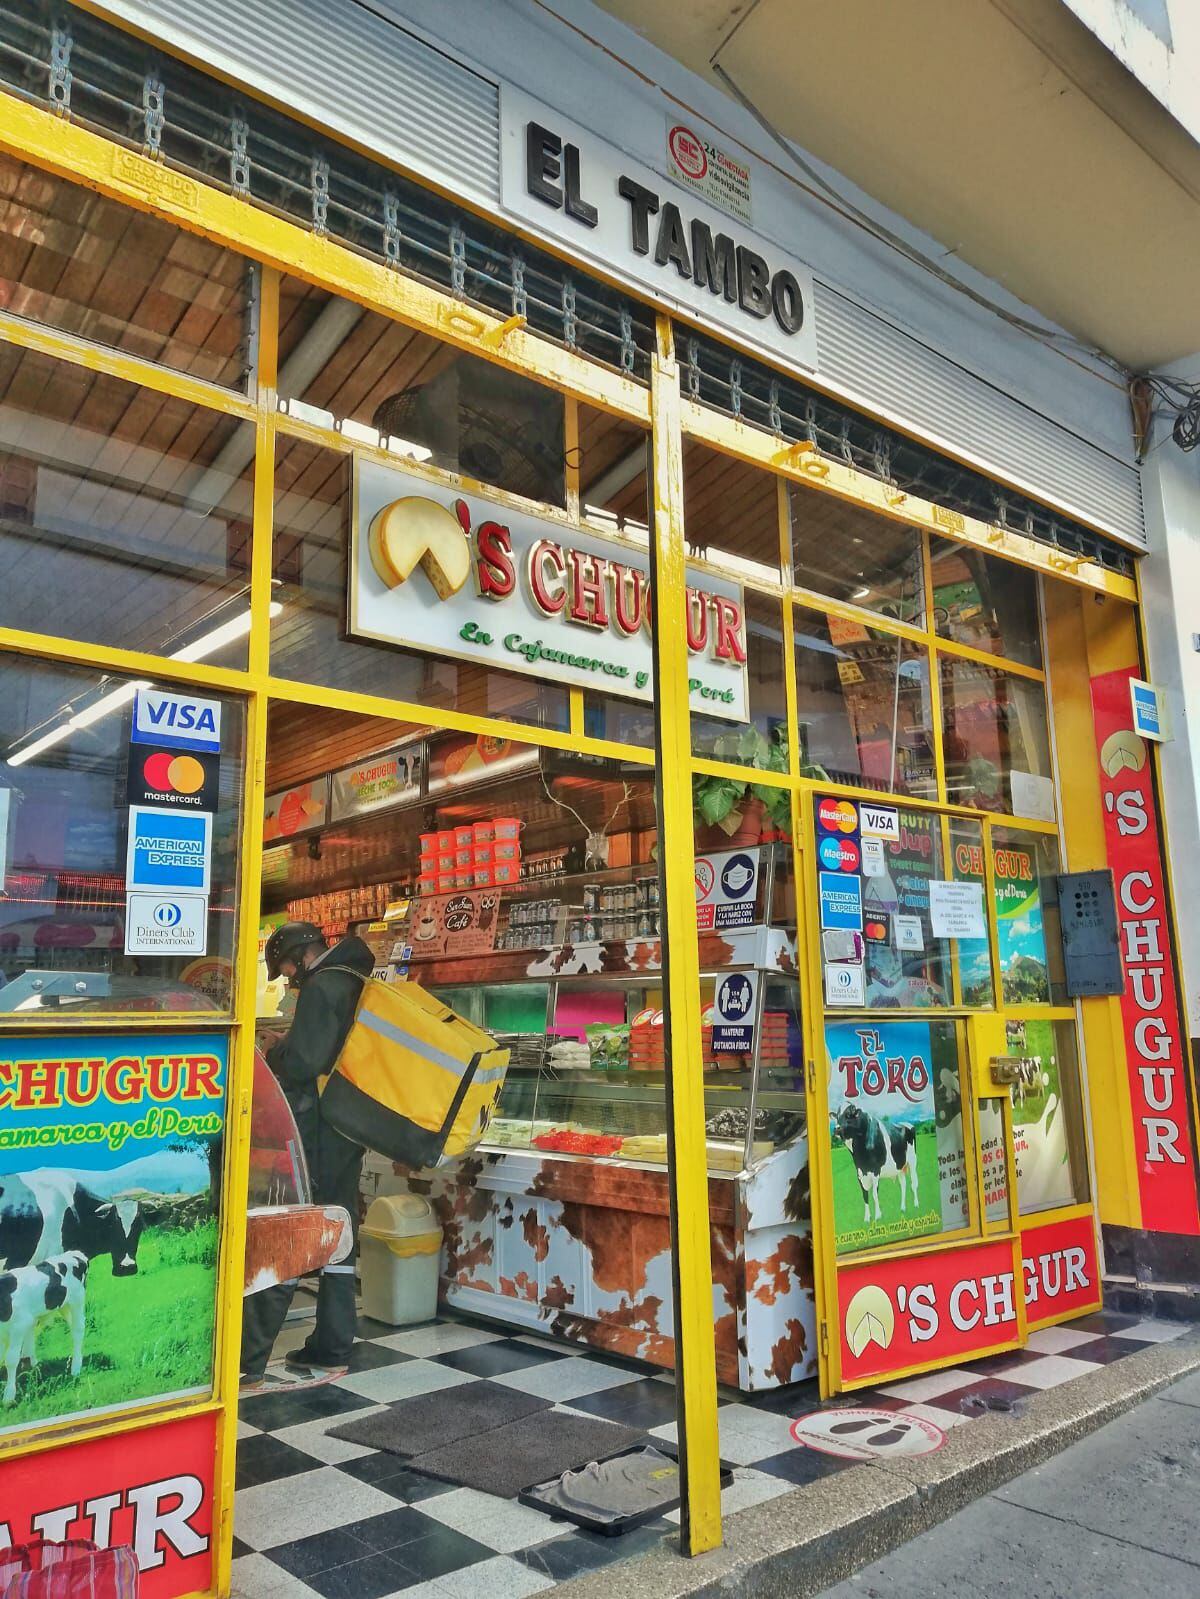 La tienda Chugur, empresa ligada a los productos lácteos y derivados, nació en Cajamarca y  ahora cuenta con 21 locales en todo el país. Ha iniciado la venta por delivery y recojo en tienda para seguir vendiendo pese a la pandemia. La ausencia de turismo les ha afectado.